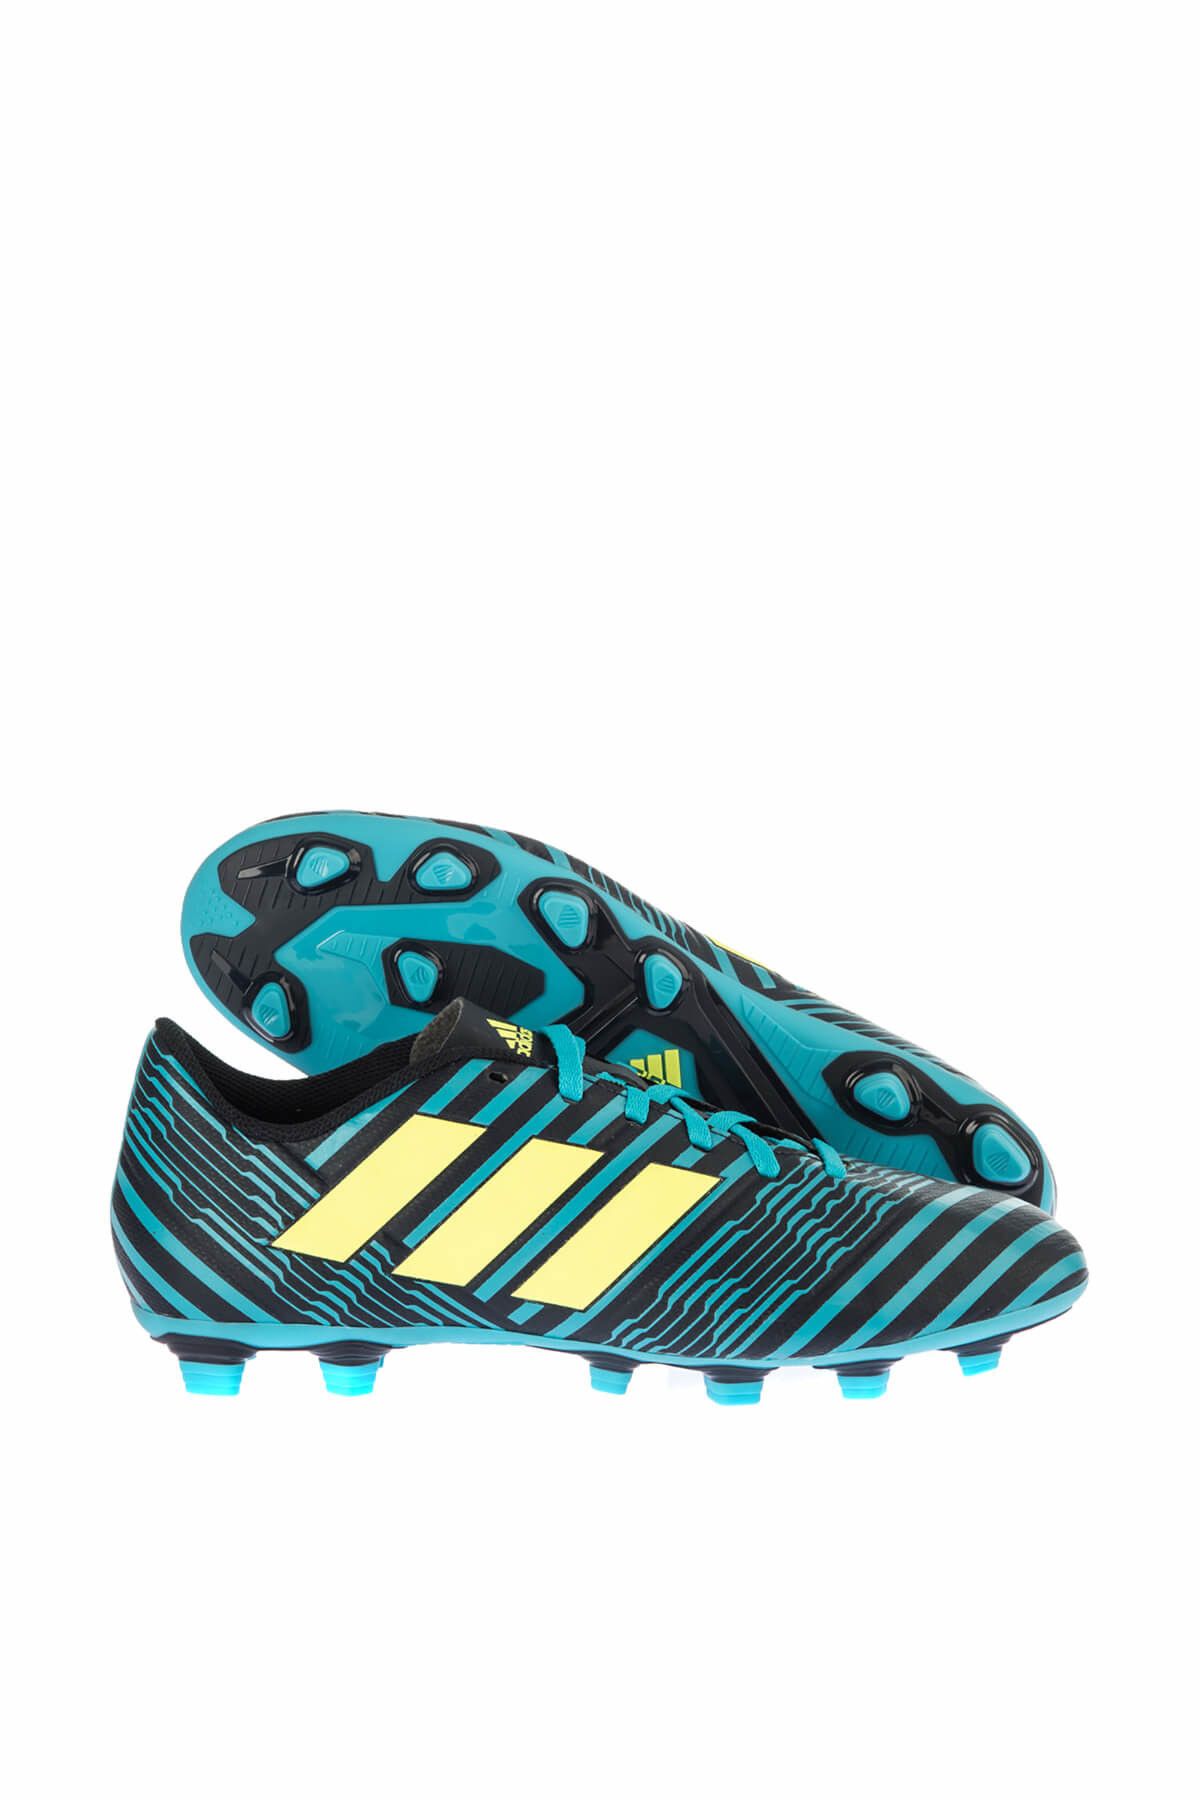 adidas Erkek Futbol Ayakkabı  - Nemeziz 17.4 Fxg - S80608